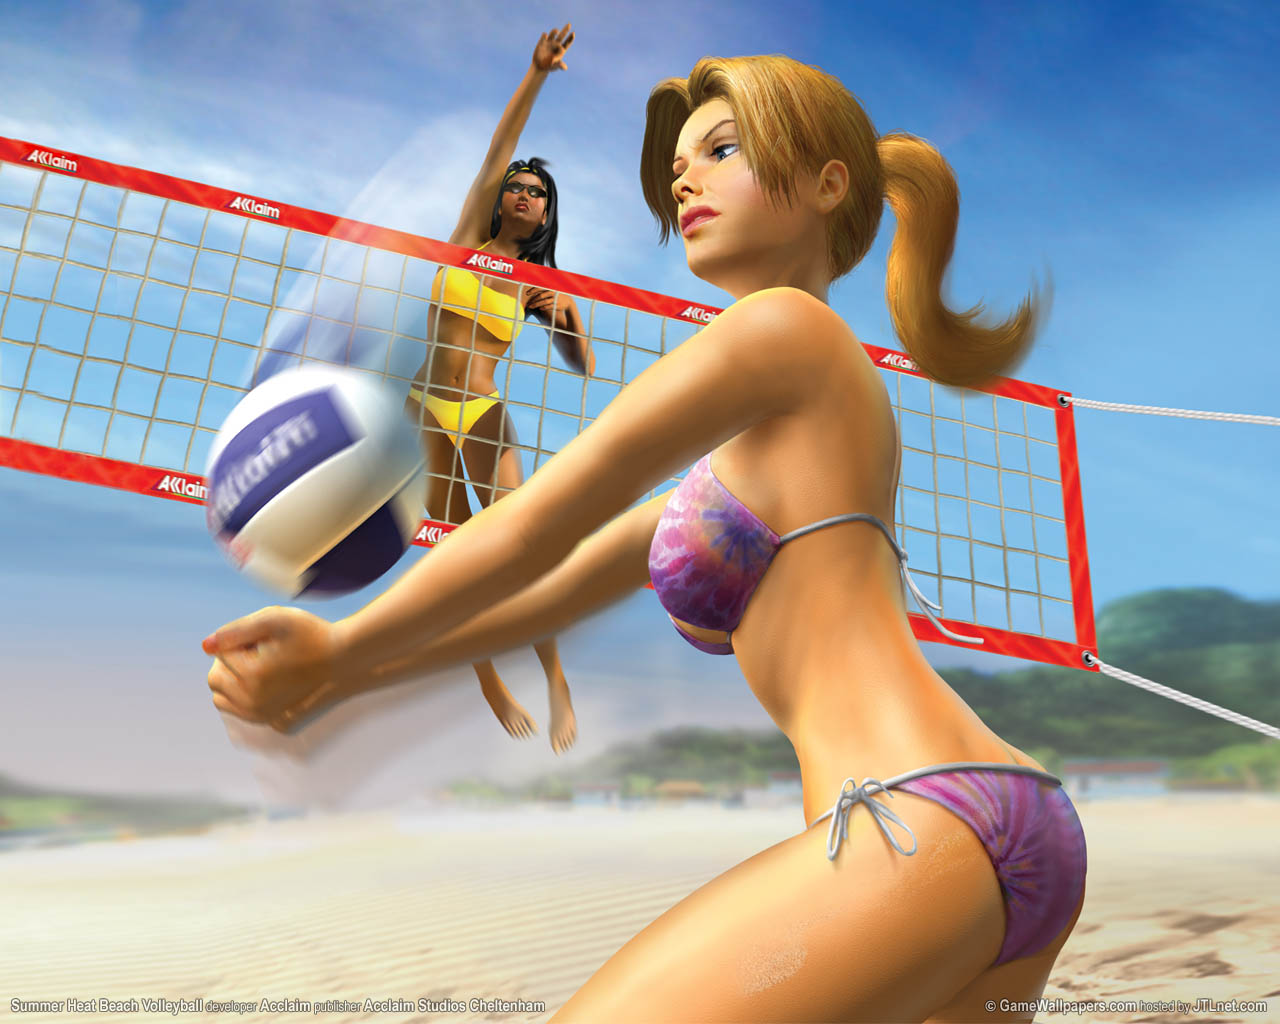 Summer Heat Beach Volleyball fond d'cran 01 1280x1024